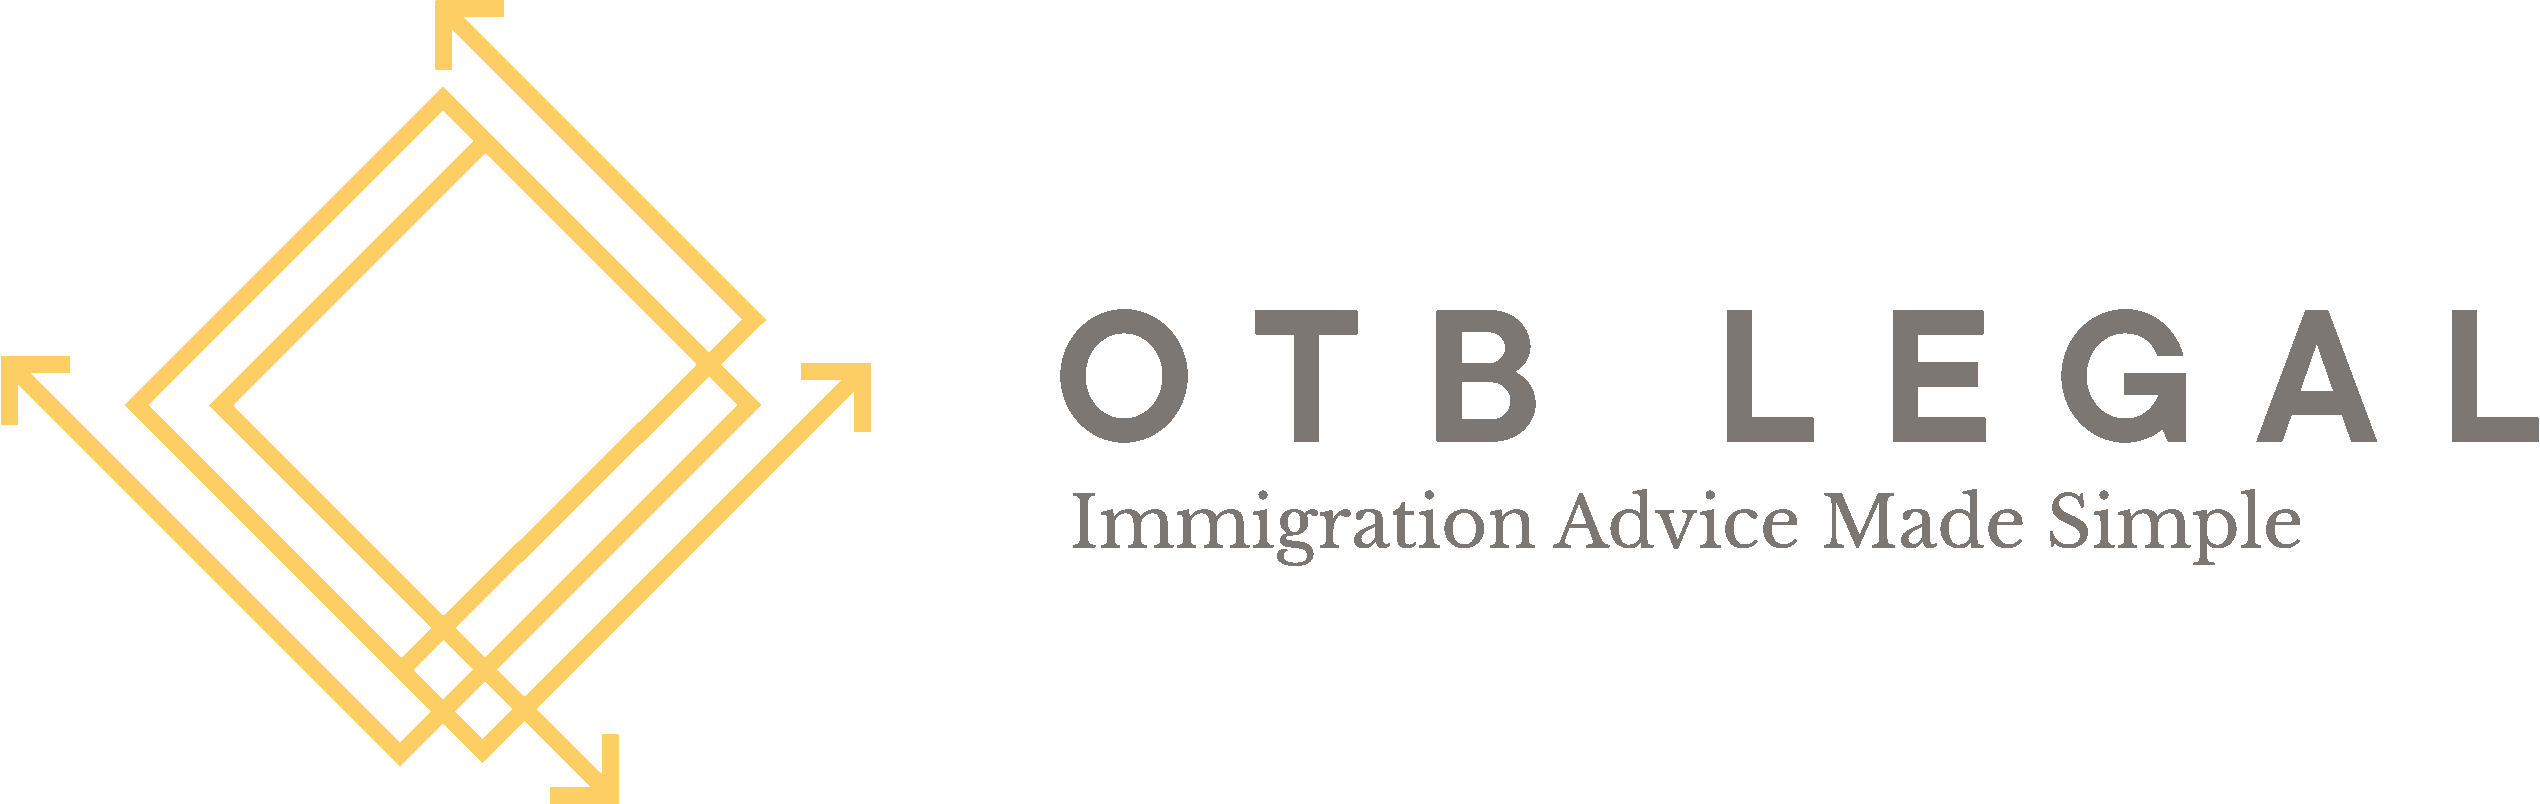 OTB Logo With Strapline